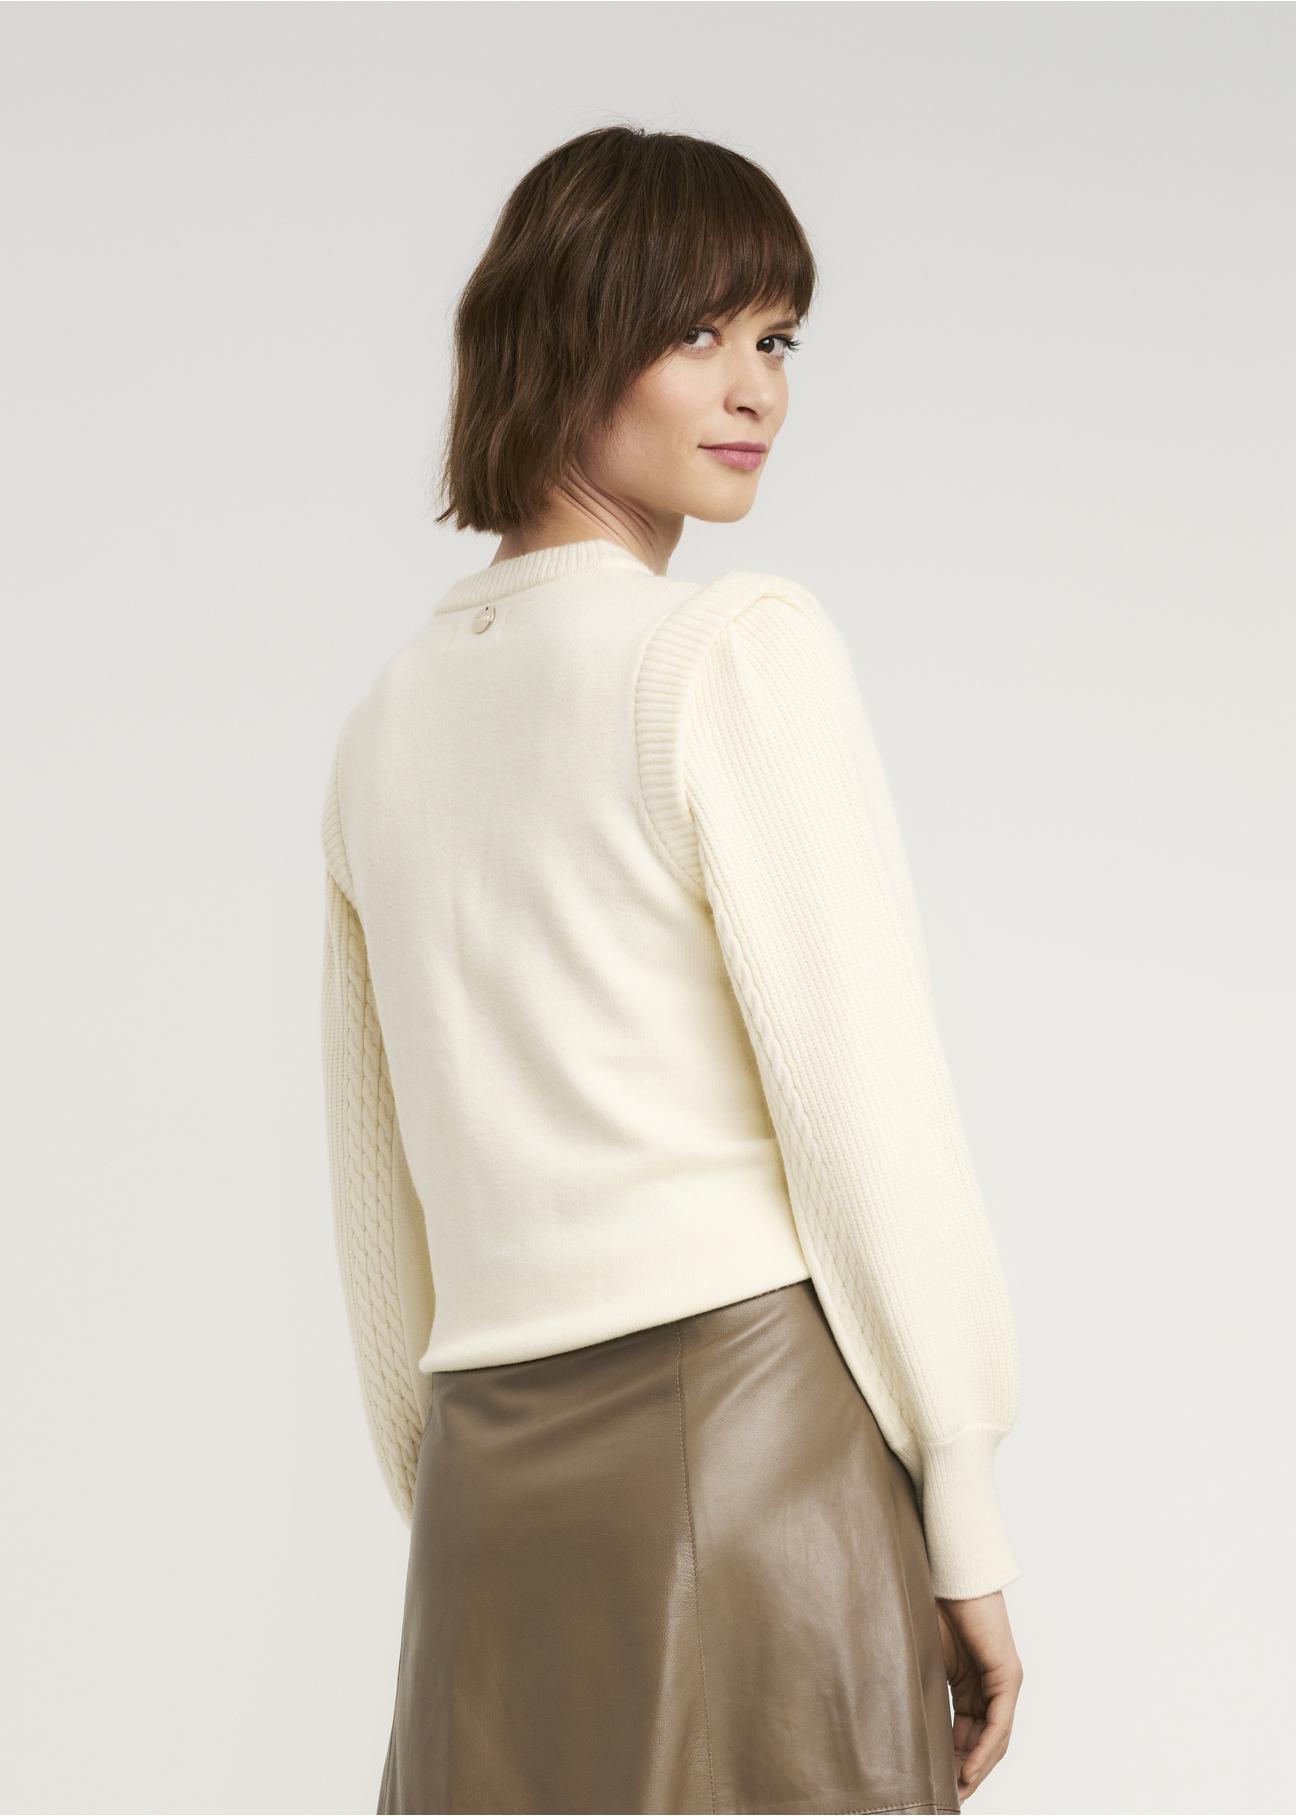 Kremowy sweter damski SWEDT-0168-12(Z22)